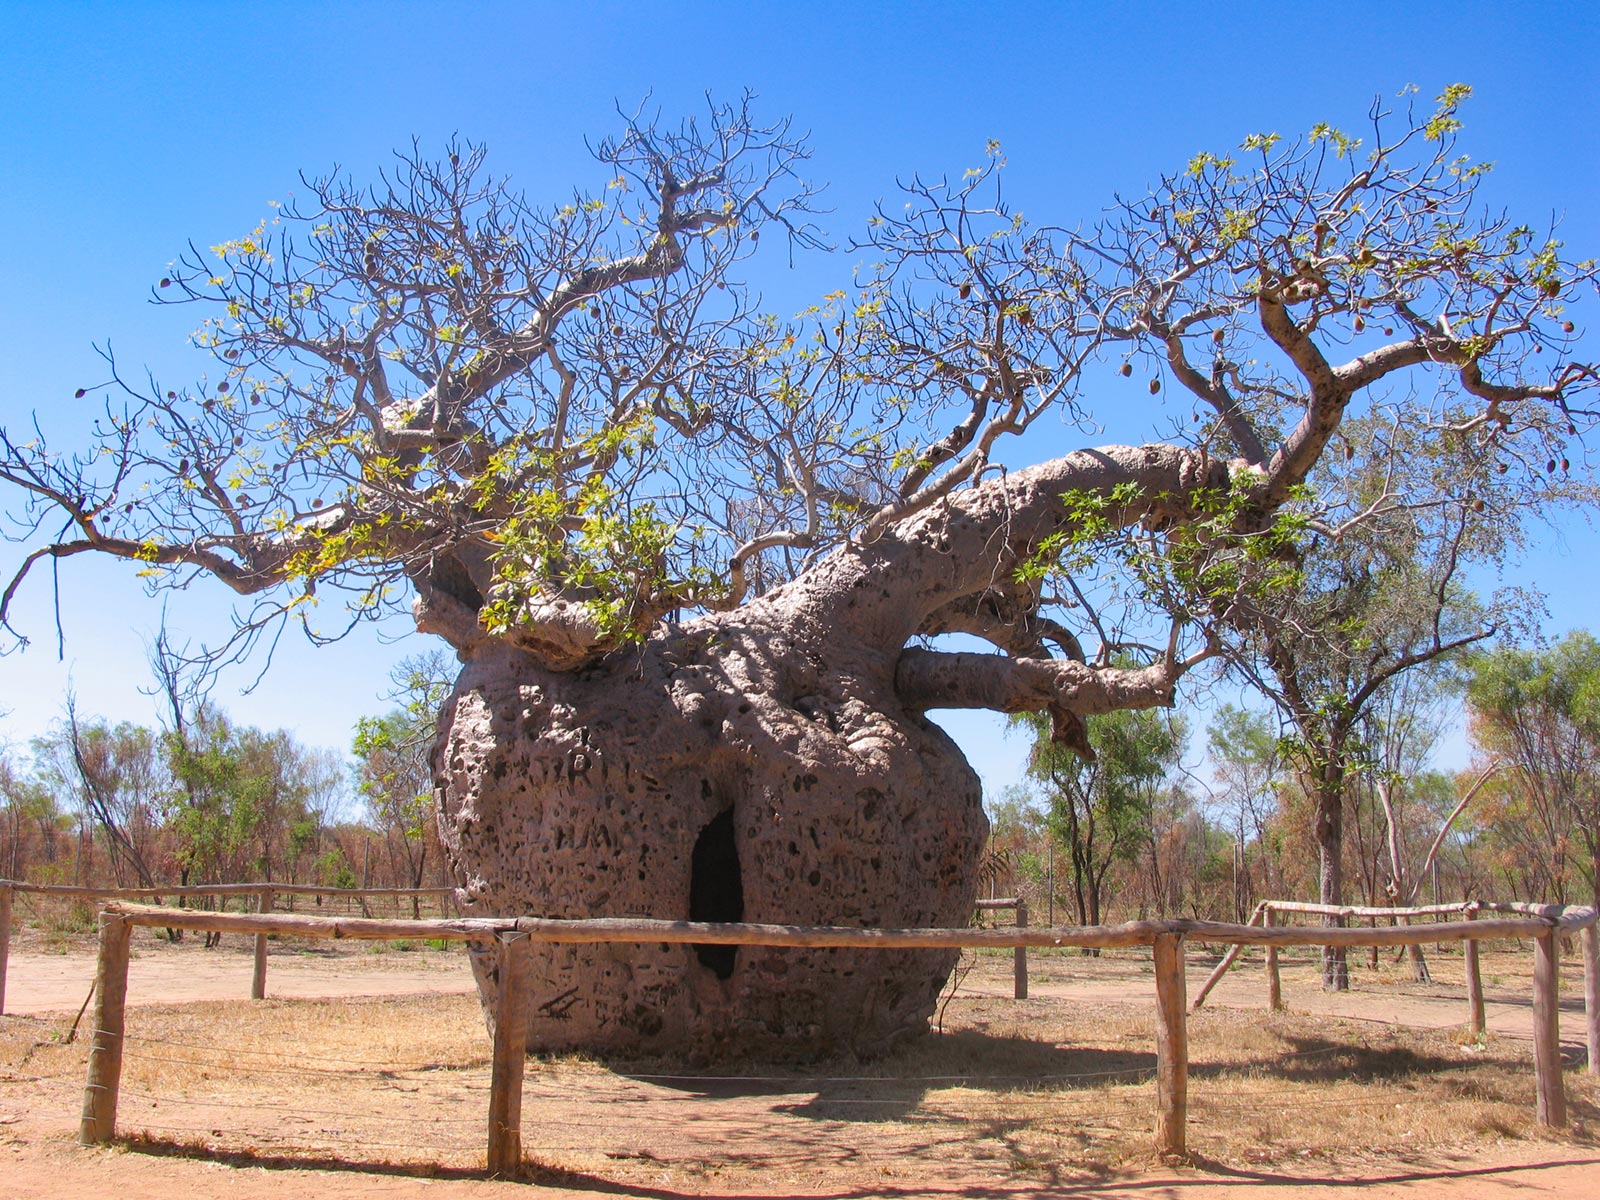 The Prison Boab Tree near Derby in the Kimberley region